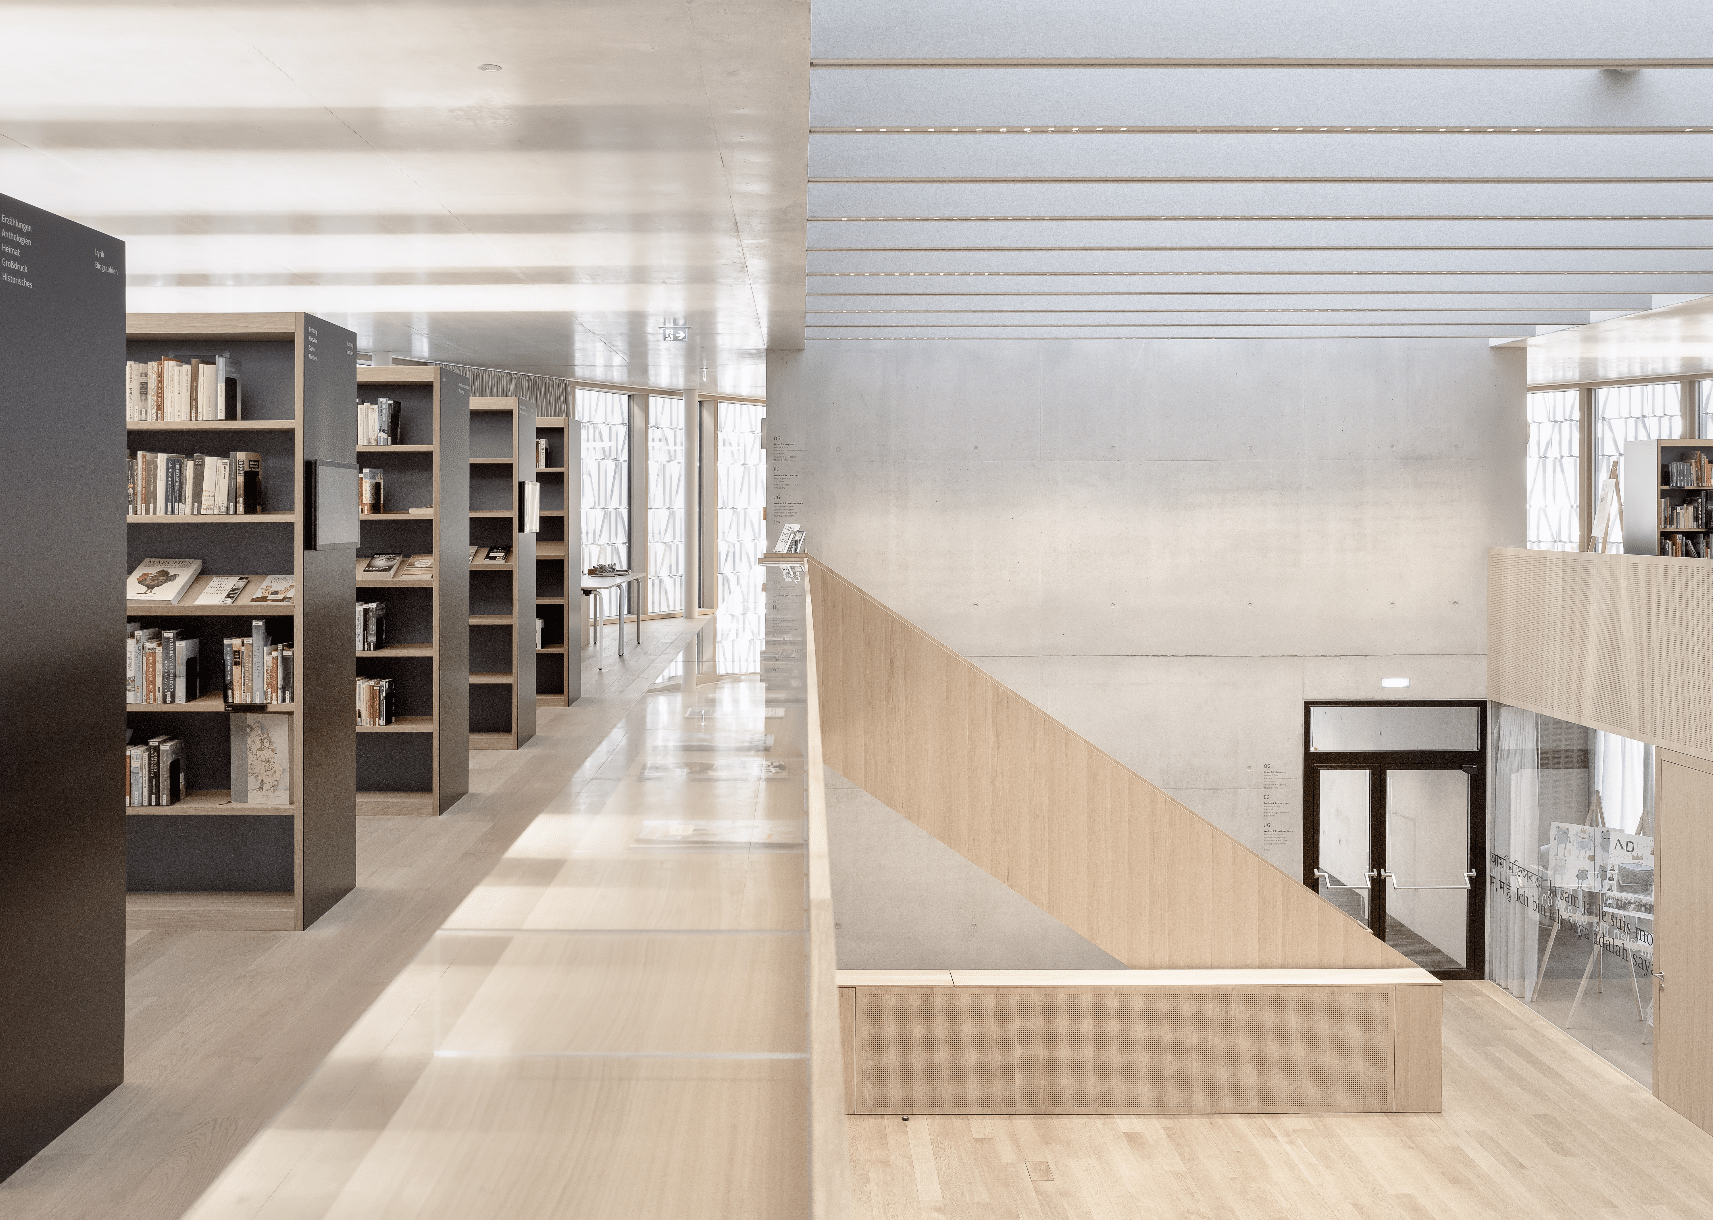 Treppenaufgang der Stadtbibliothek Dornbirn mit Materialmix aus Beton und Holz.